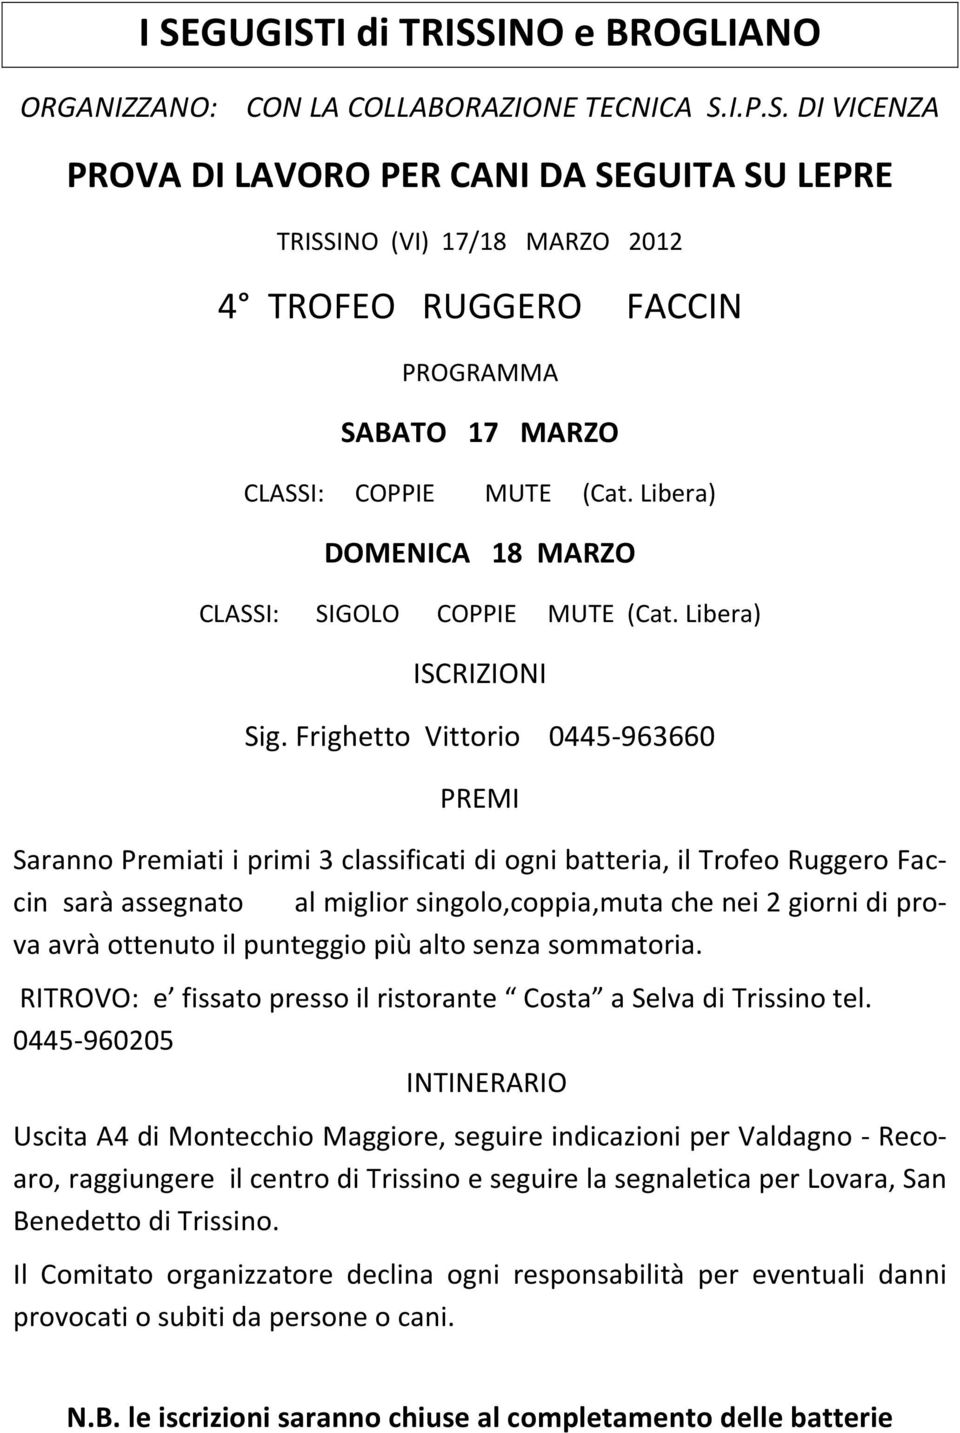 Frighetto Vittorio 0445-963660 PREMI Saranno Premiati i primi 3 classificati di ogni batteria, il Trofeo Ruggero Faccin sarà assegnato al miglior singolo,coppia,muta che nei 2 giorni di prova avrà